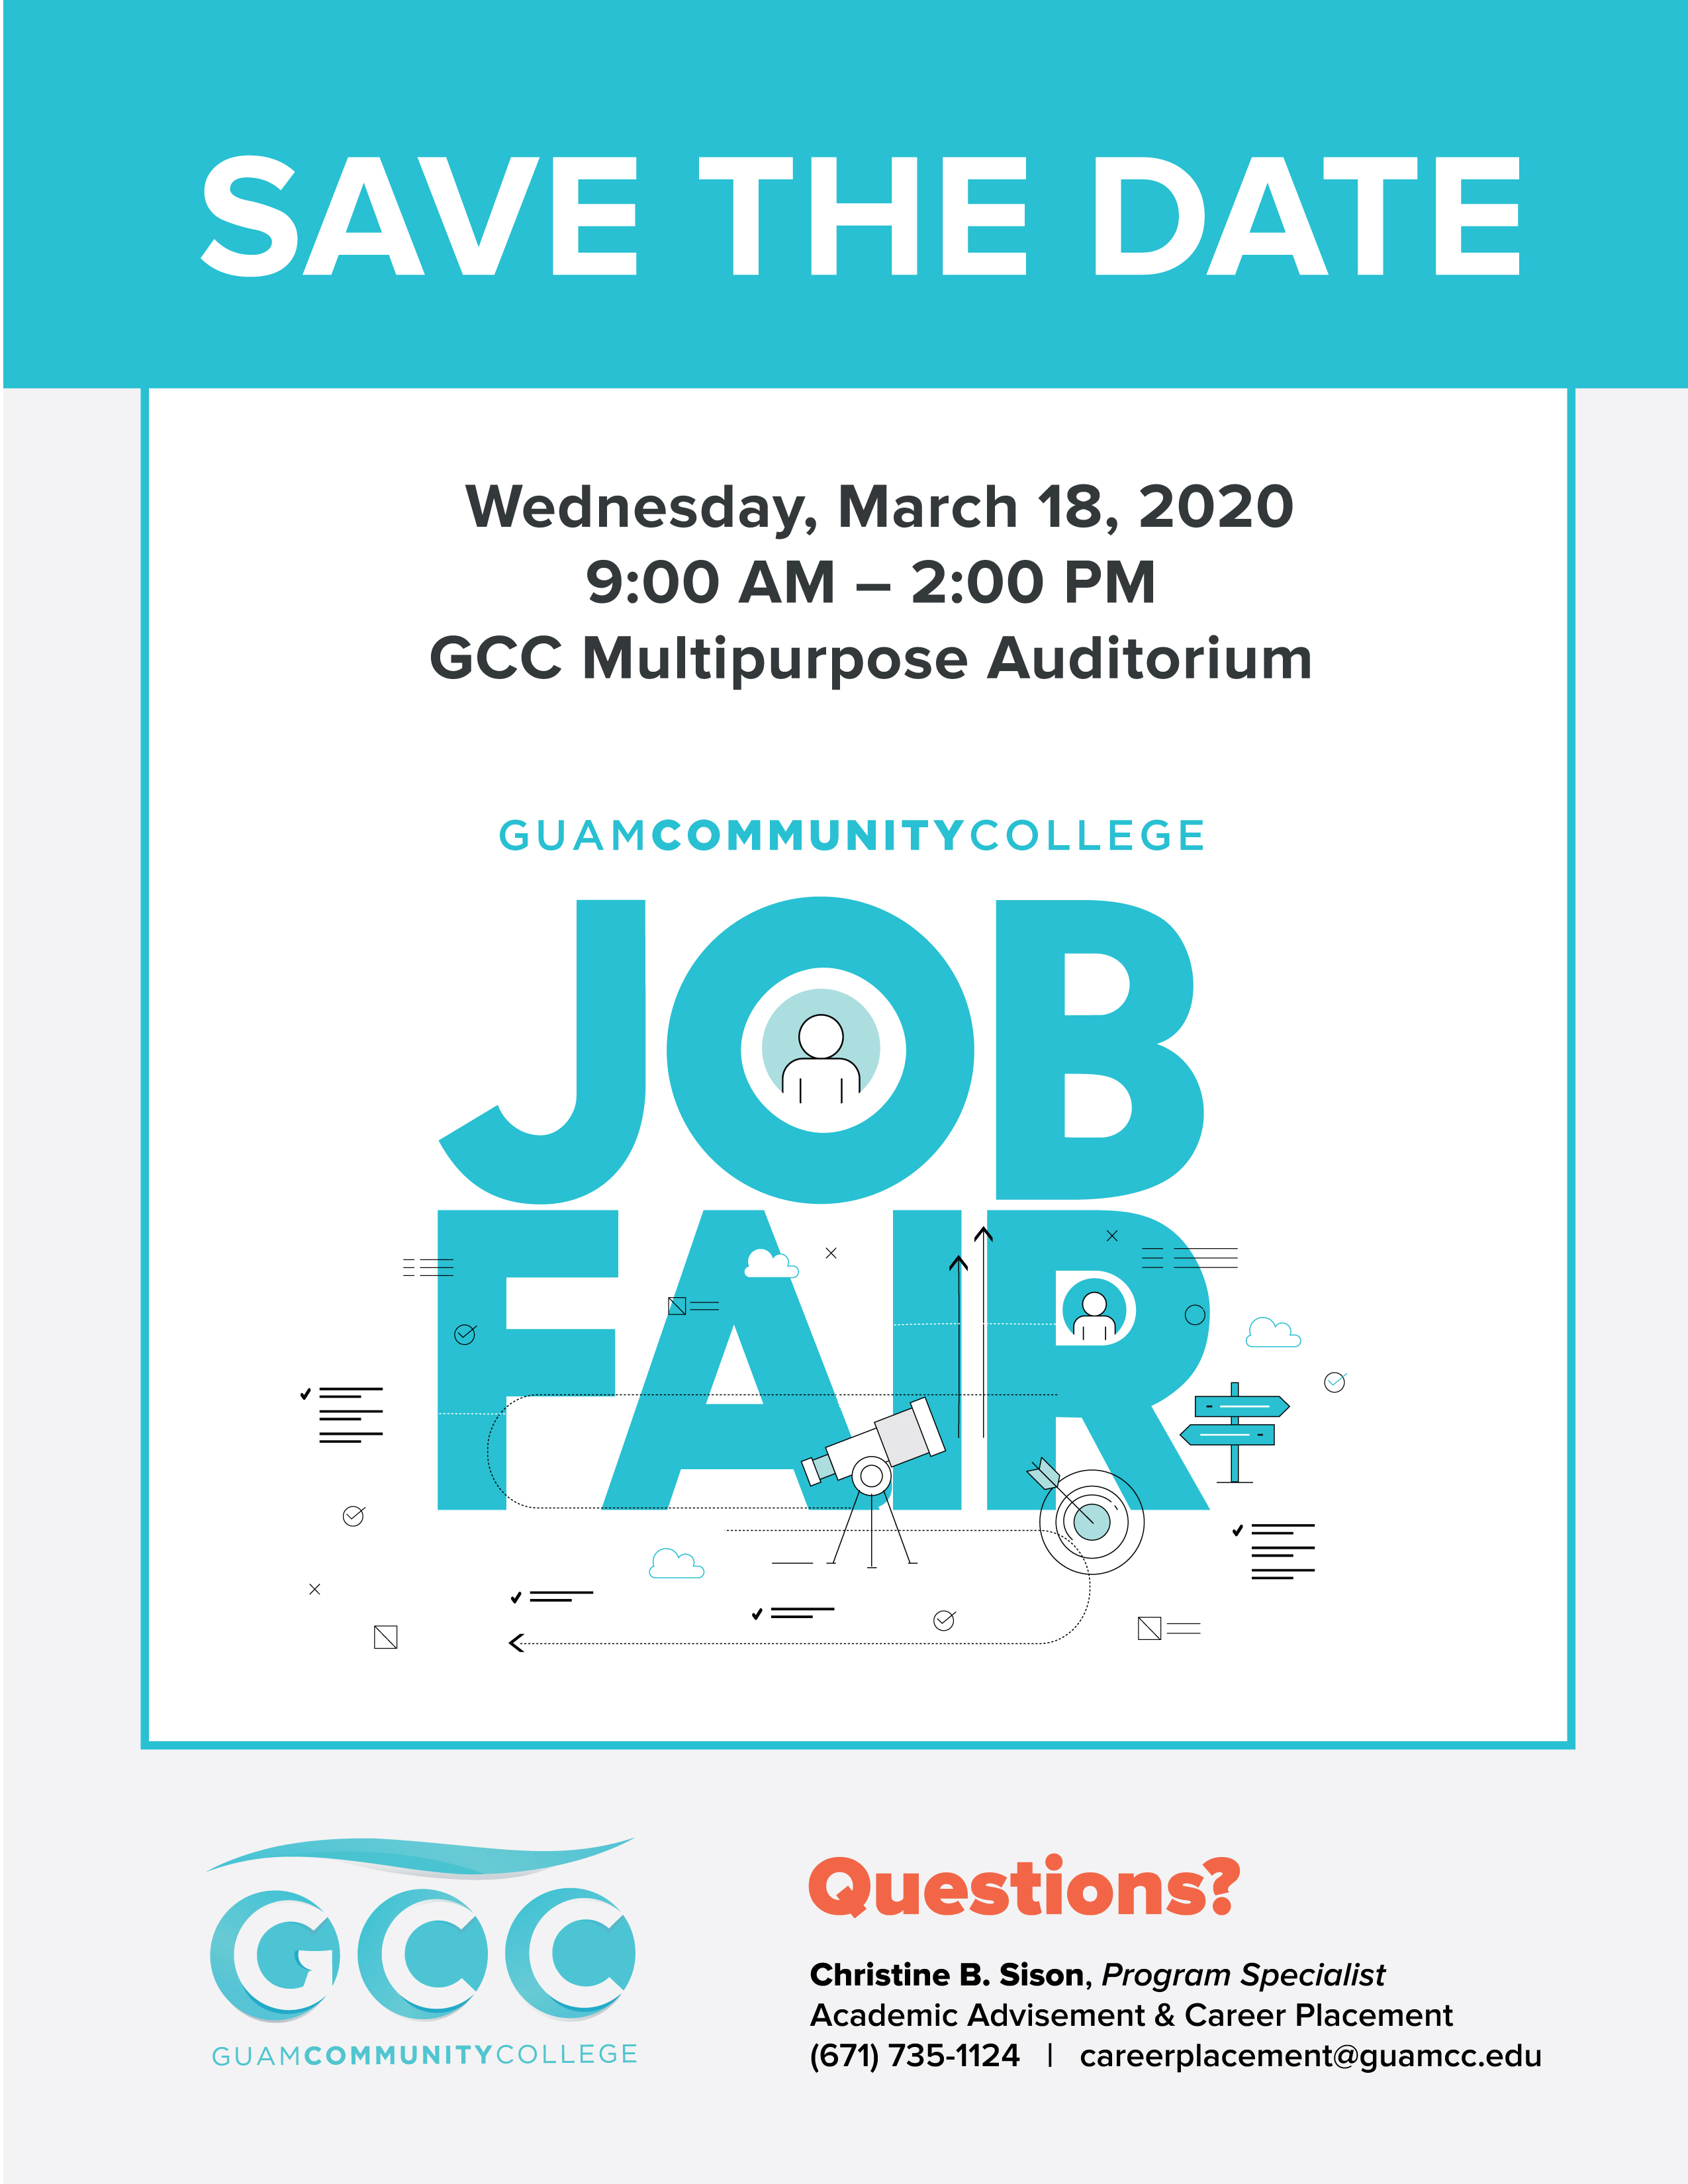 GCC Job Fair Guam Community College GCC Guam